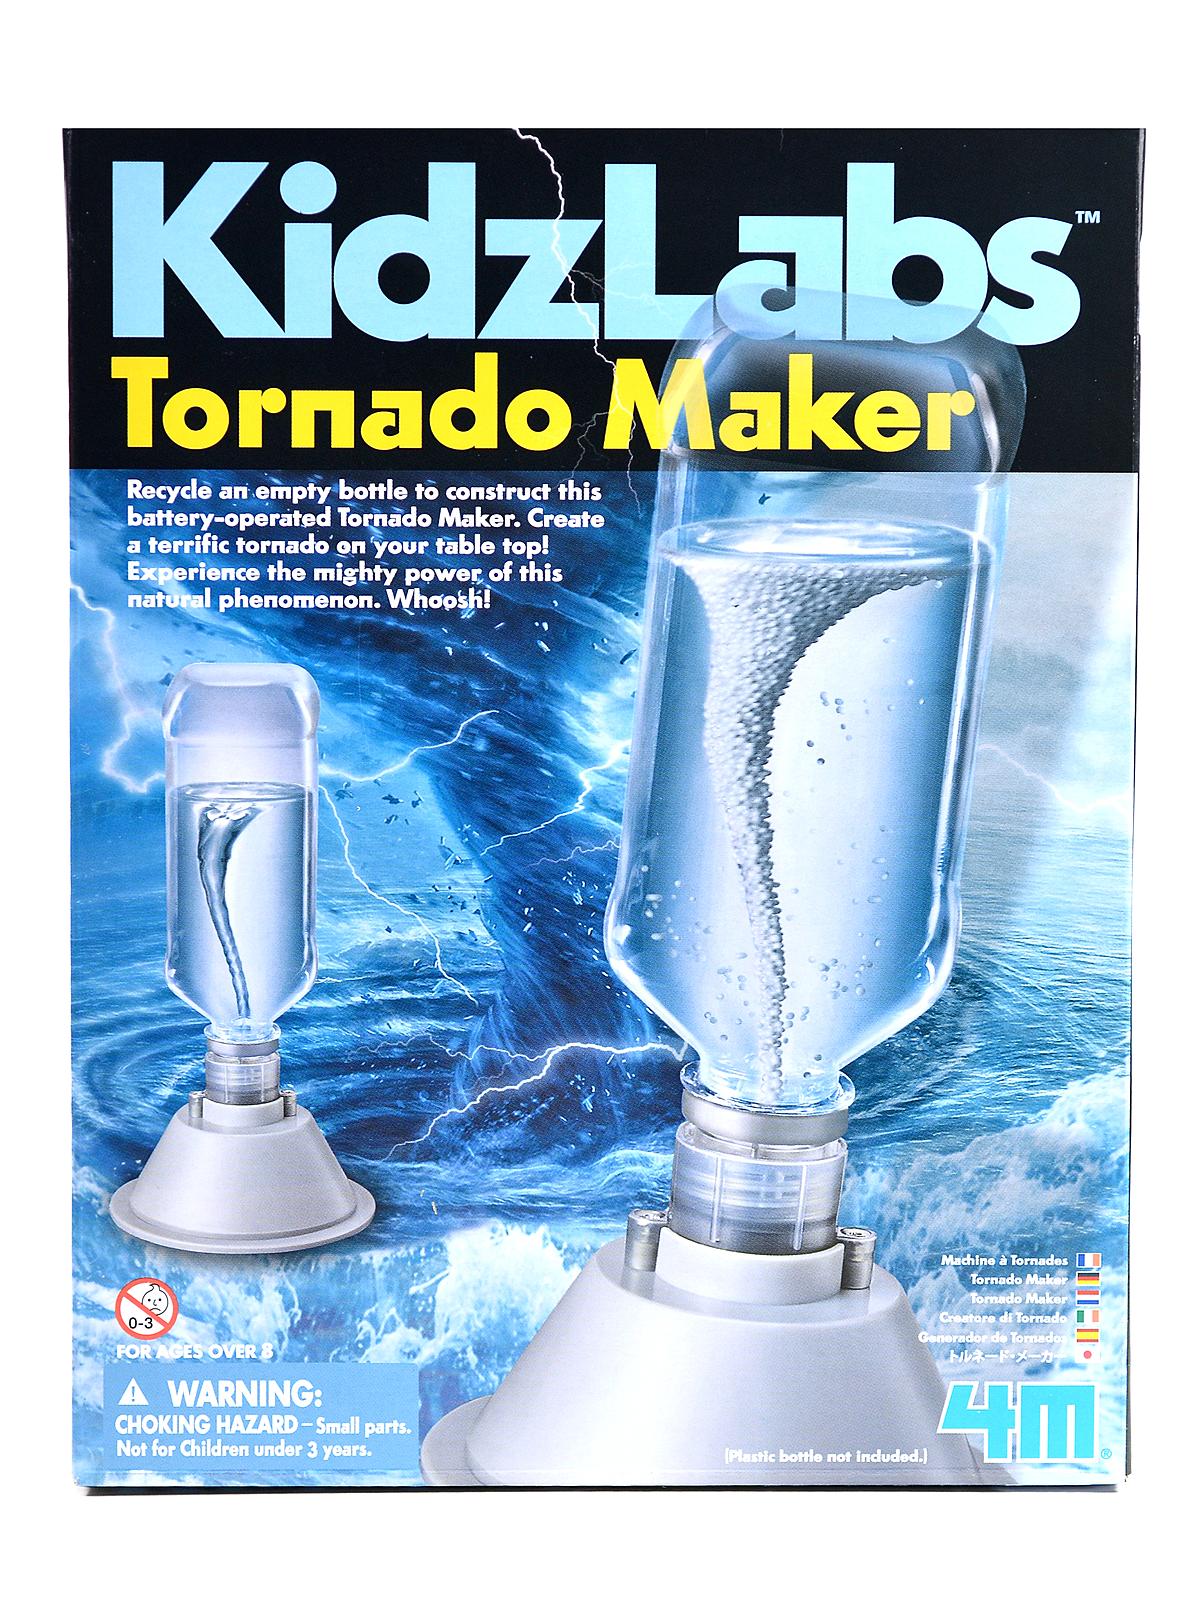 Kidzlabs Tornado Maker Each